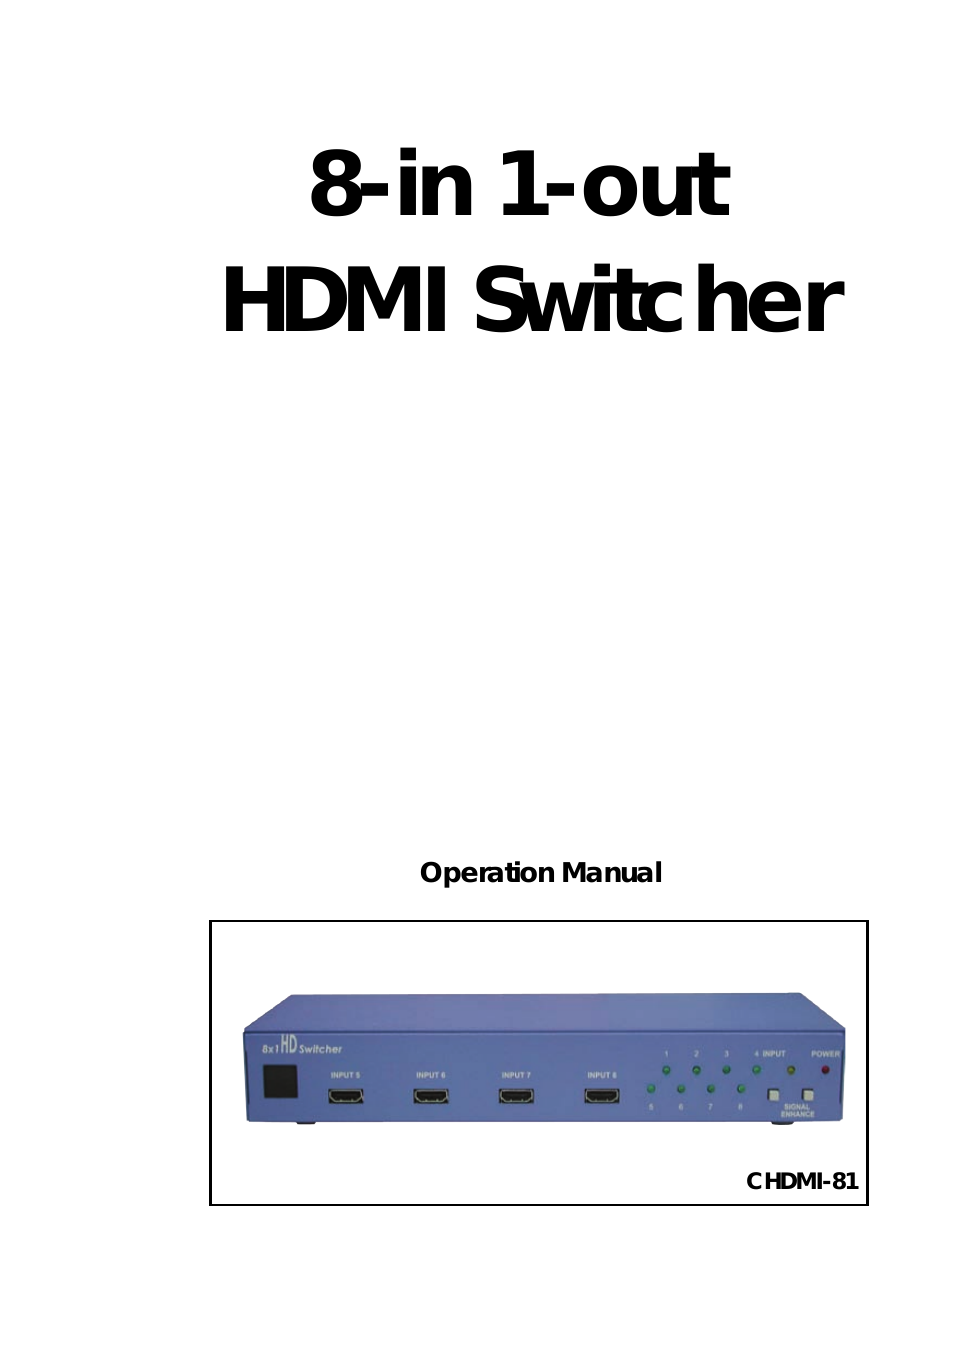 SE-HDMI-8-LC